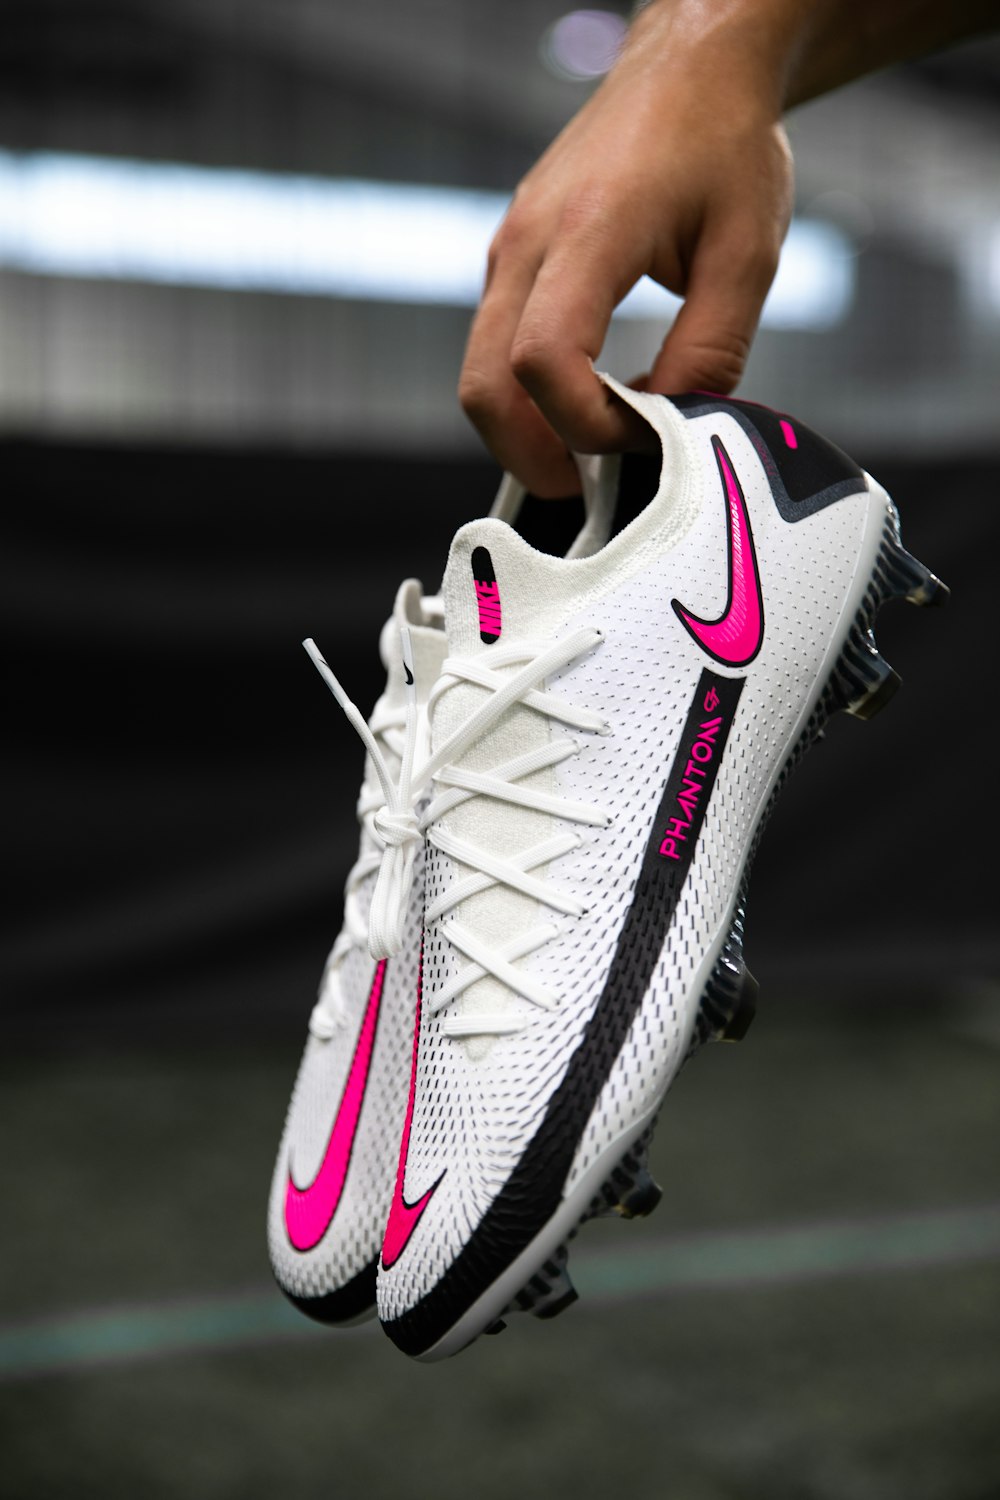 White and black nike athletic shoe photo – Free Soccer Image on Unsplash